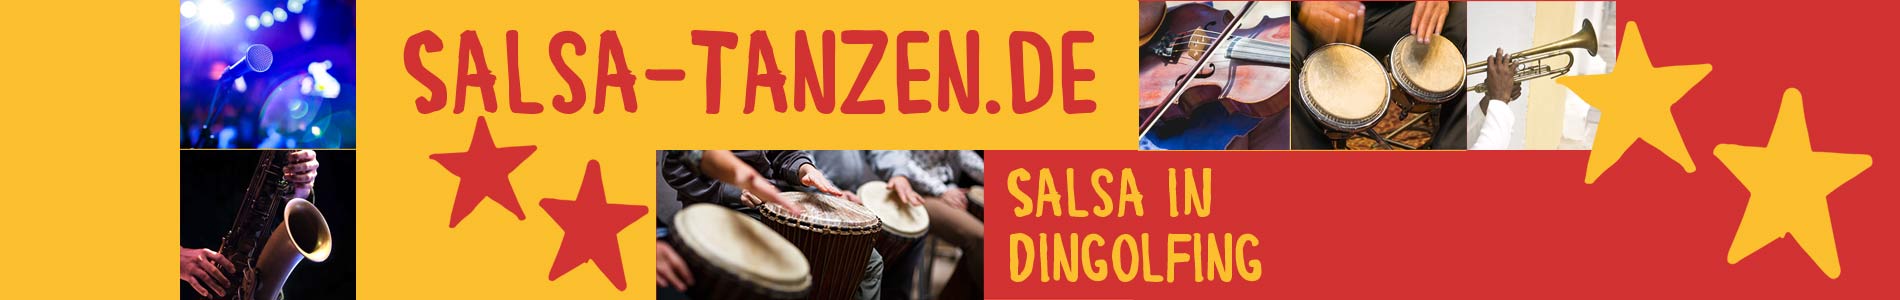 Salsa in Dingolfing – Salsa lernen und tanzen, Tanzkurse, Partys, Veranstaltungen